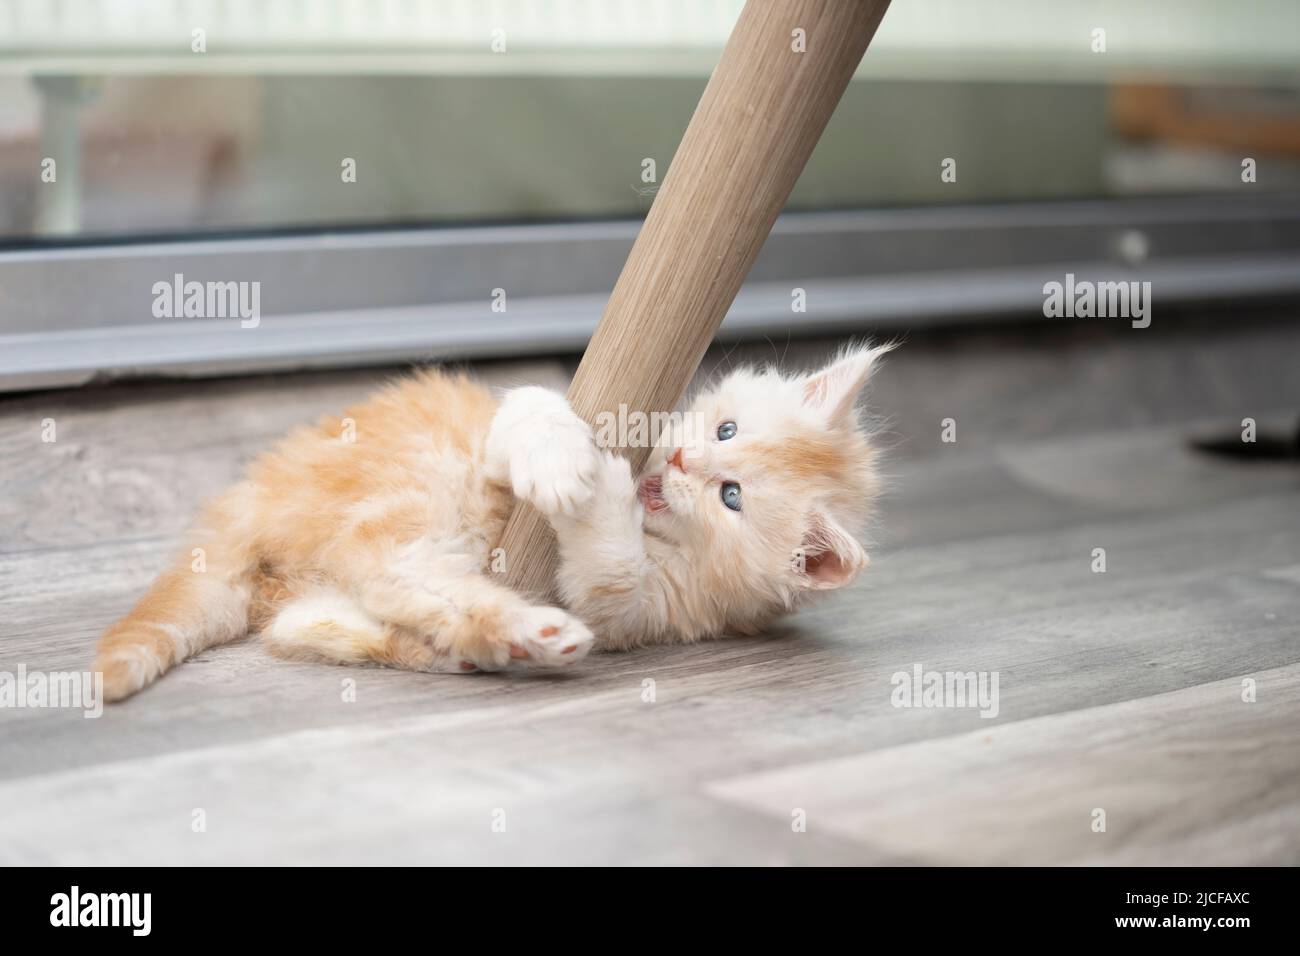 ginger joueur maine coon chaton jouant avec la jambe de chaise s'amusant Banque D'Images